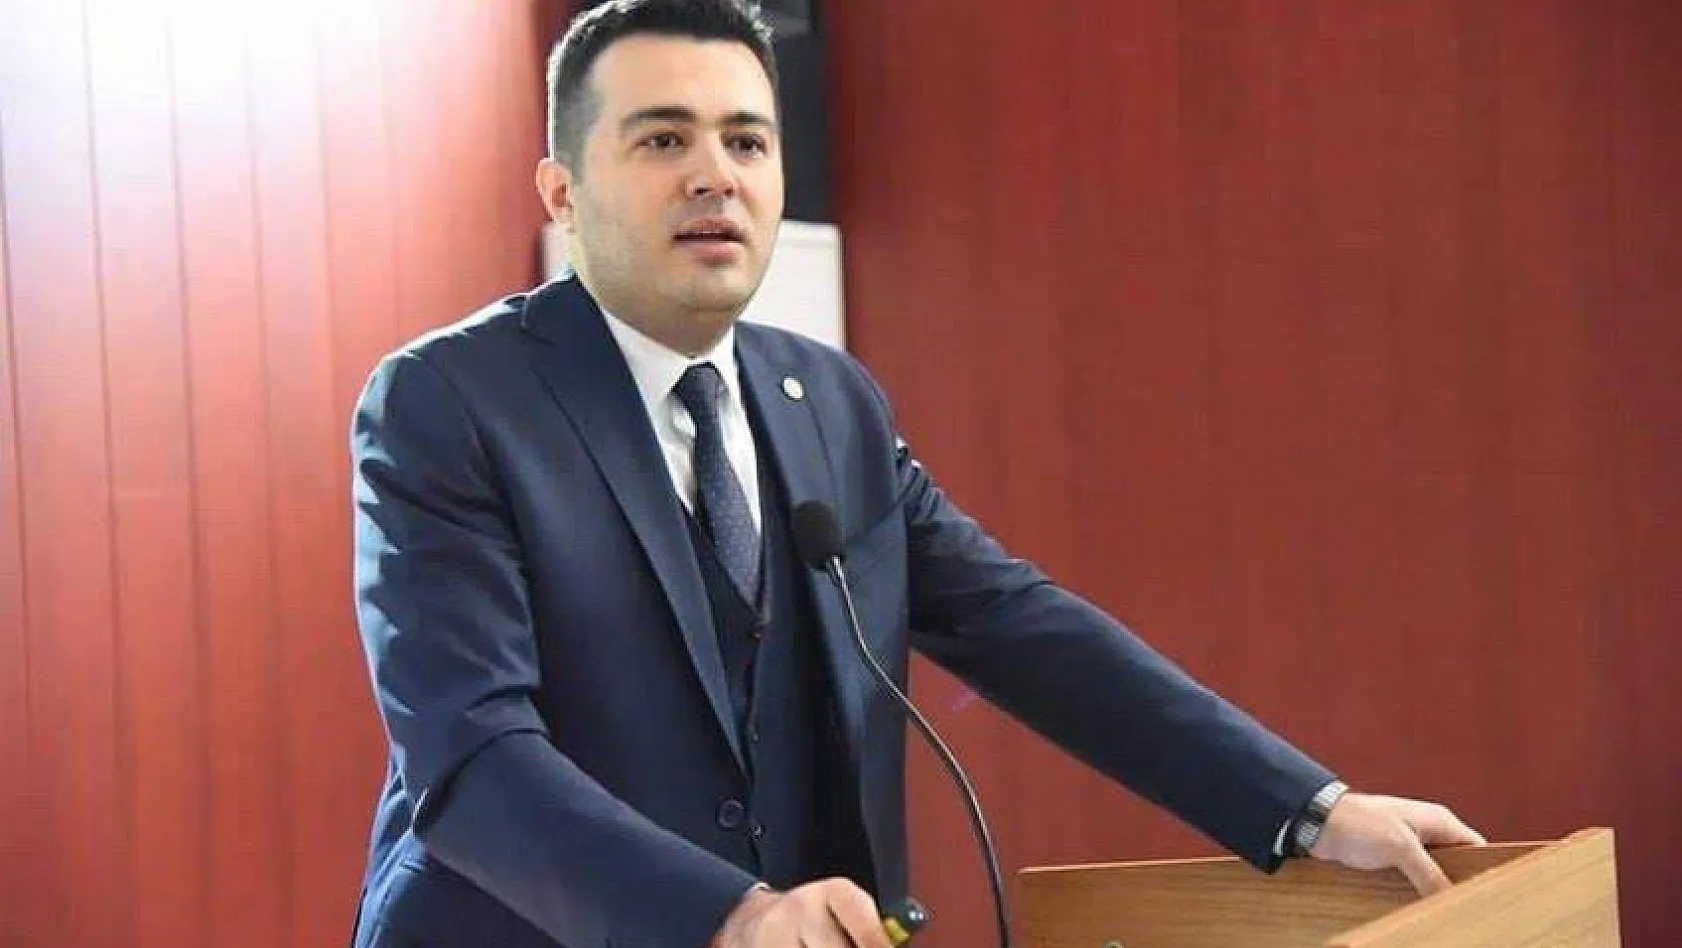 Özvarinli Kayserispor Başkanına seslendi: Samimiyseniz raporu kamuoyuna açıklayın! 